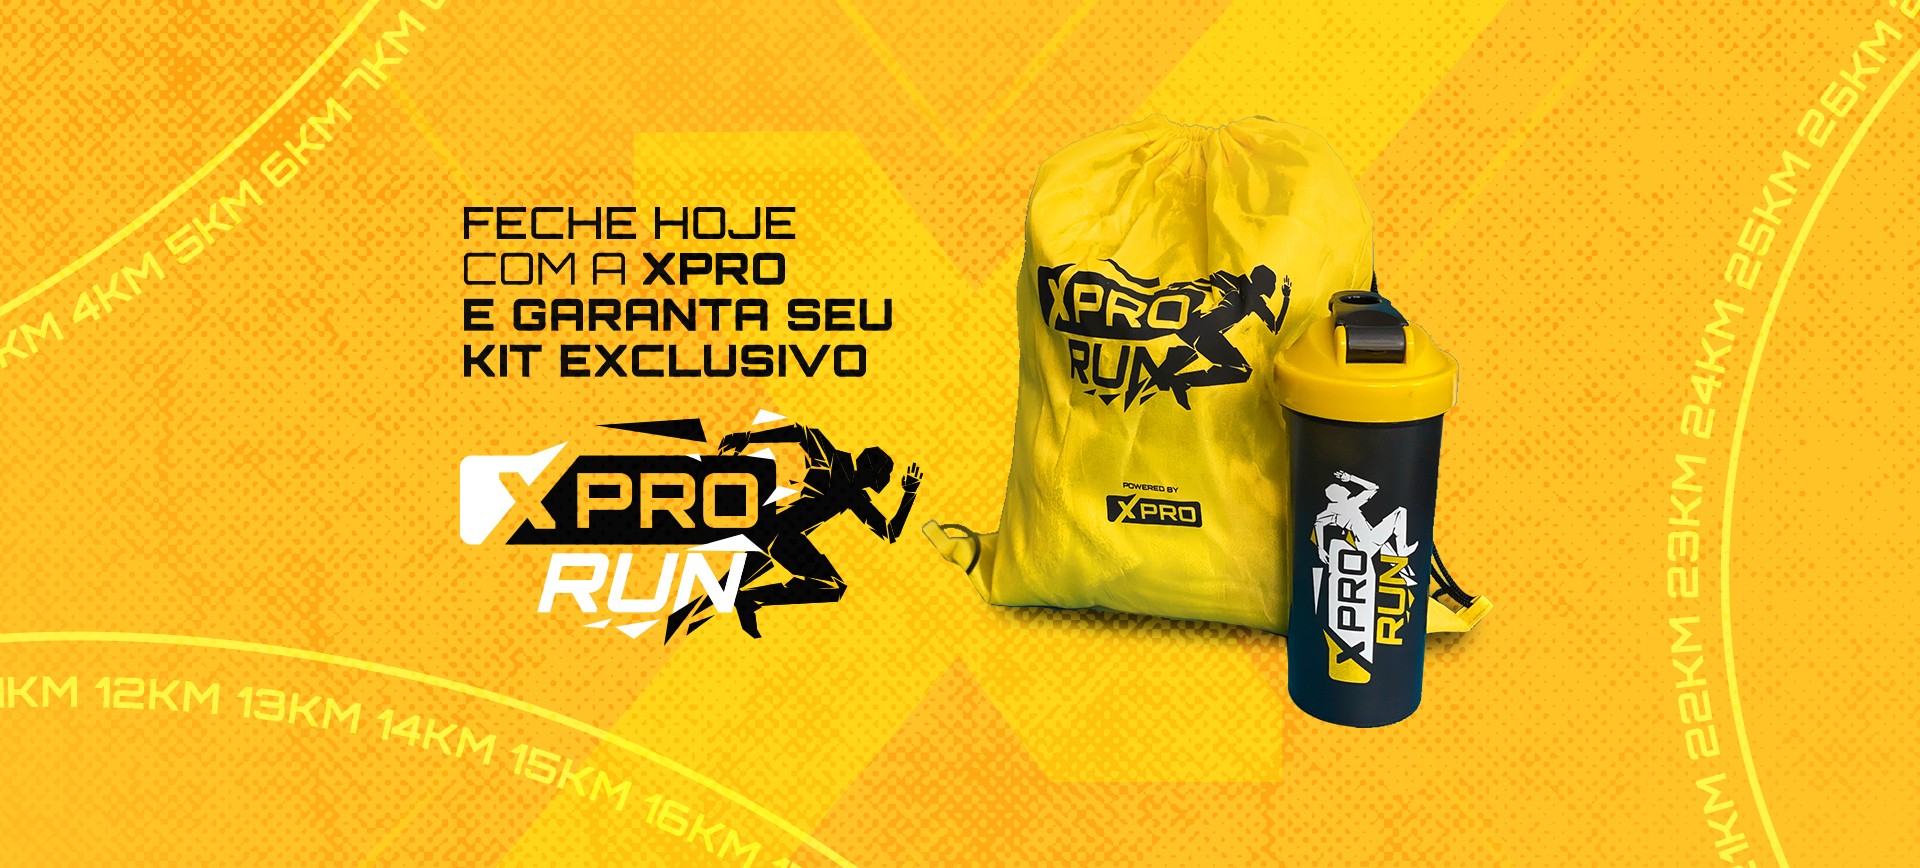 XPRO RUN: Corra mais, corra melhor, corra sem lesão! 7